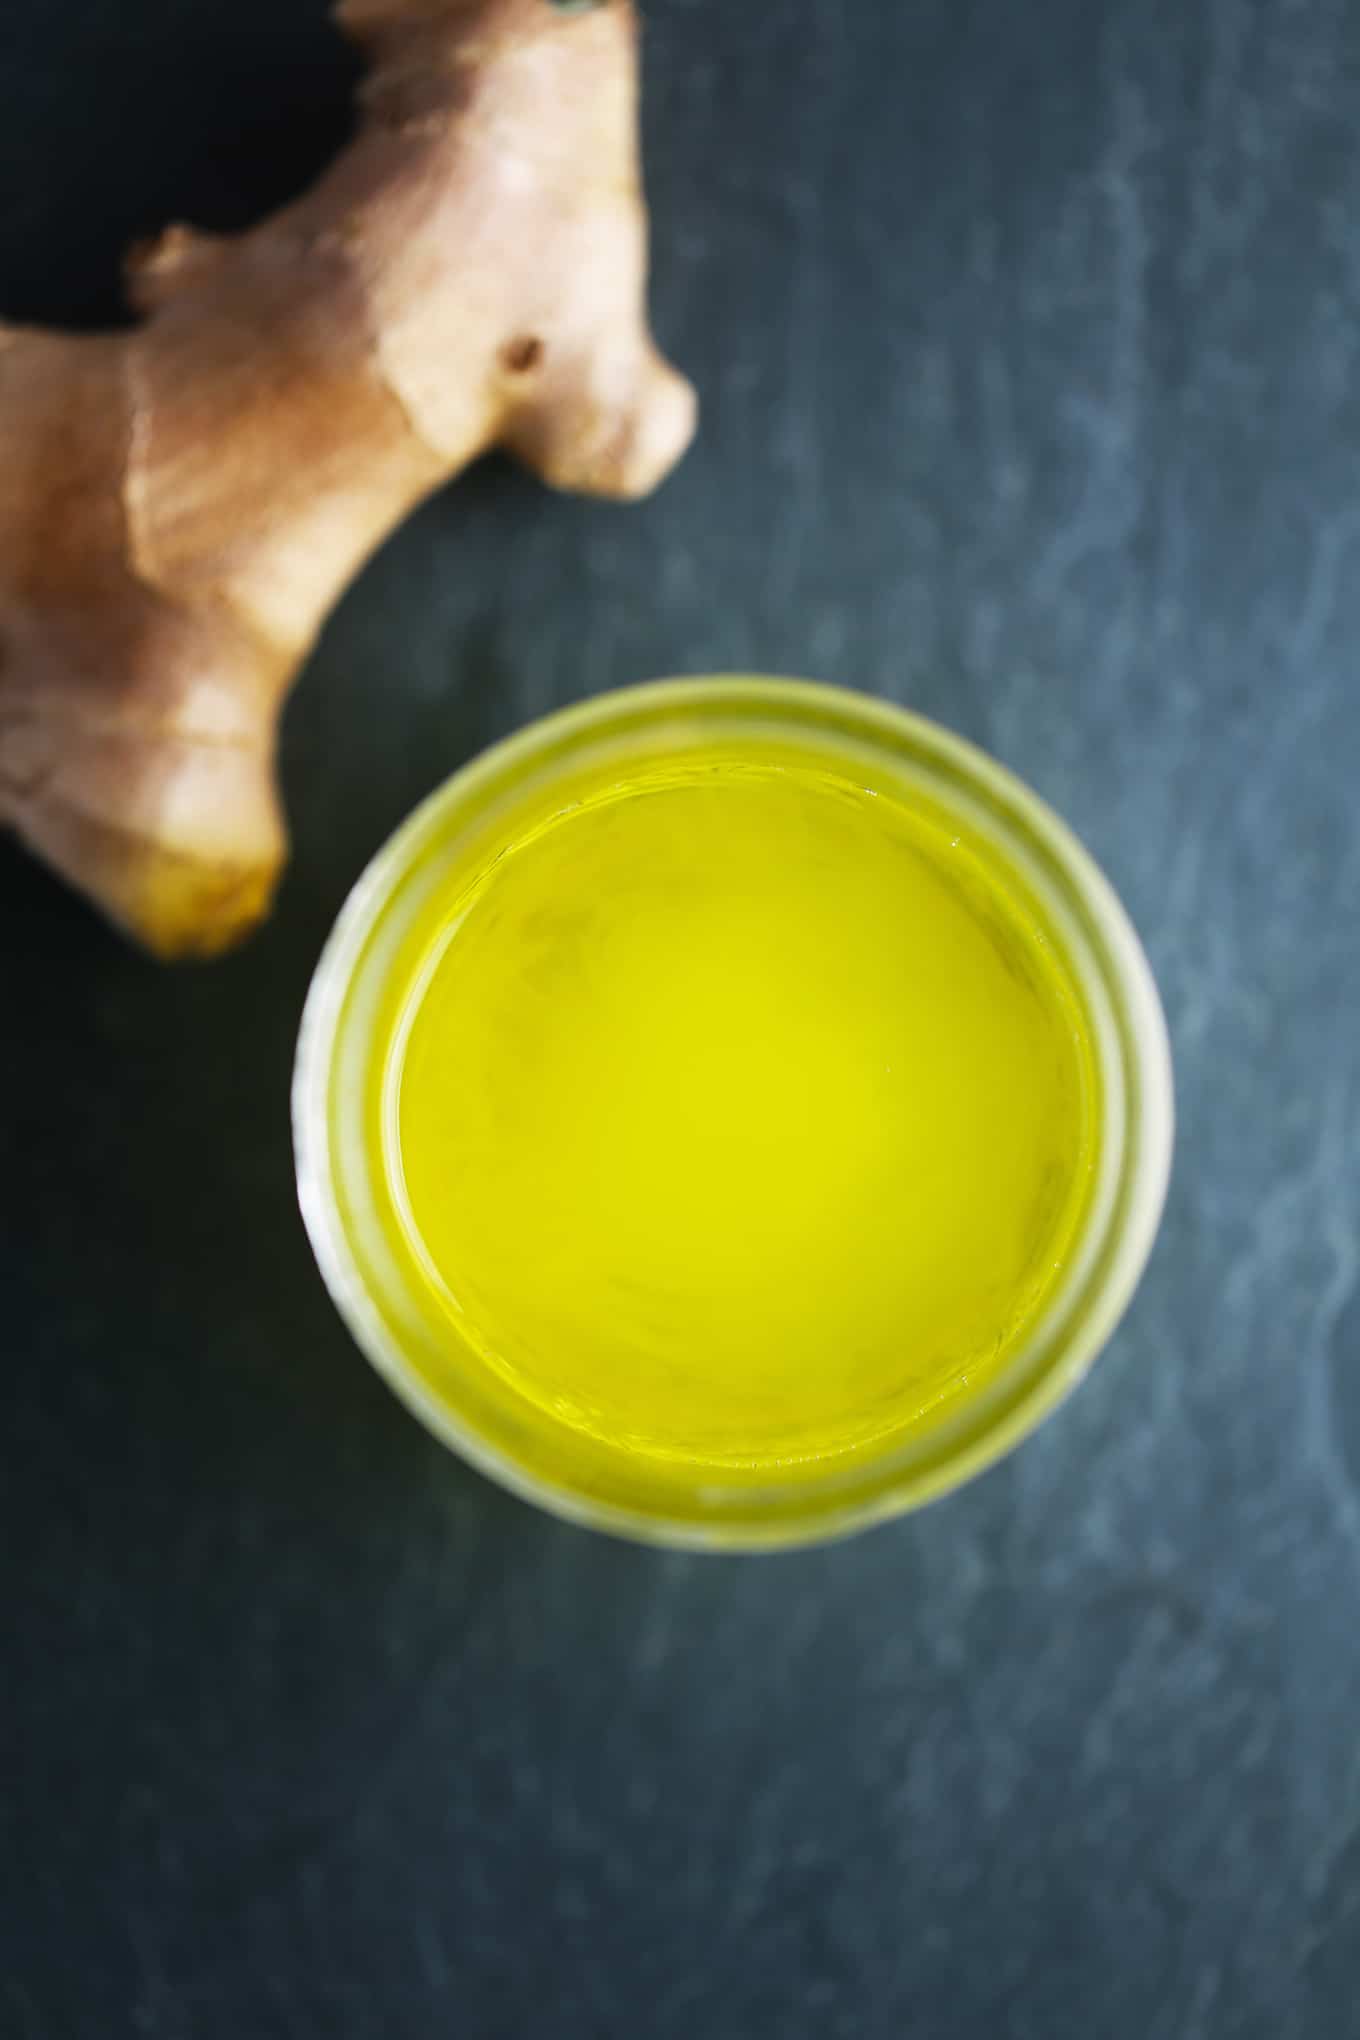 Is olive oil safe for sperm